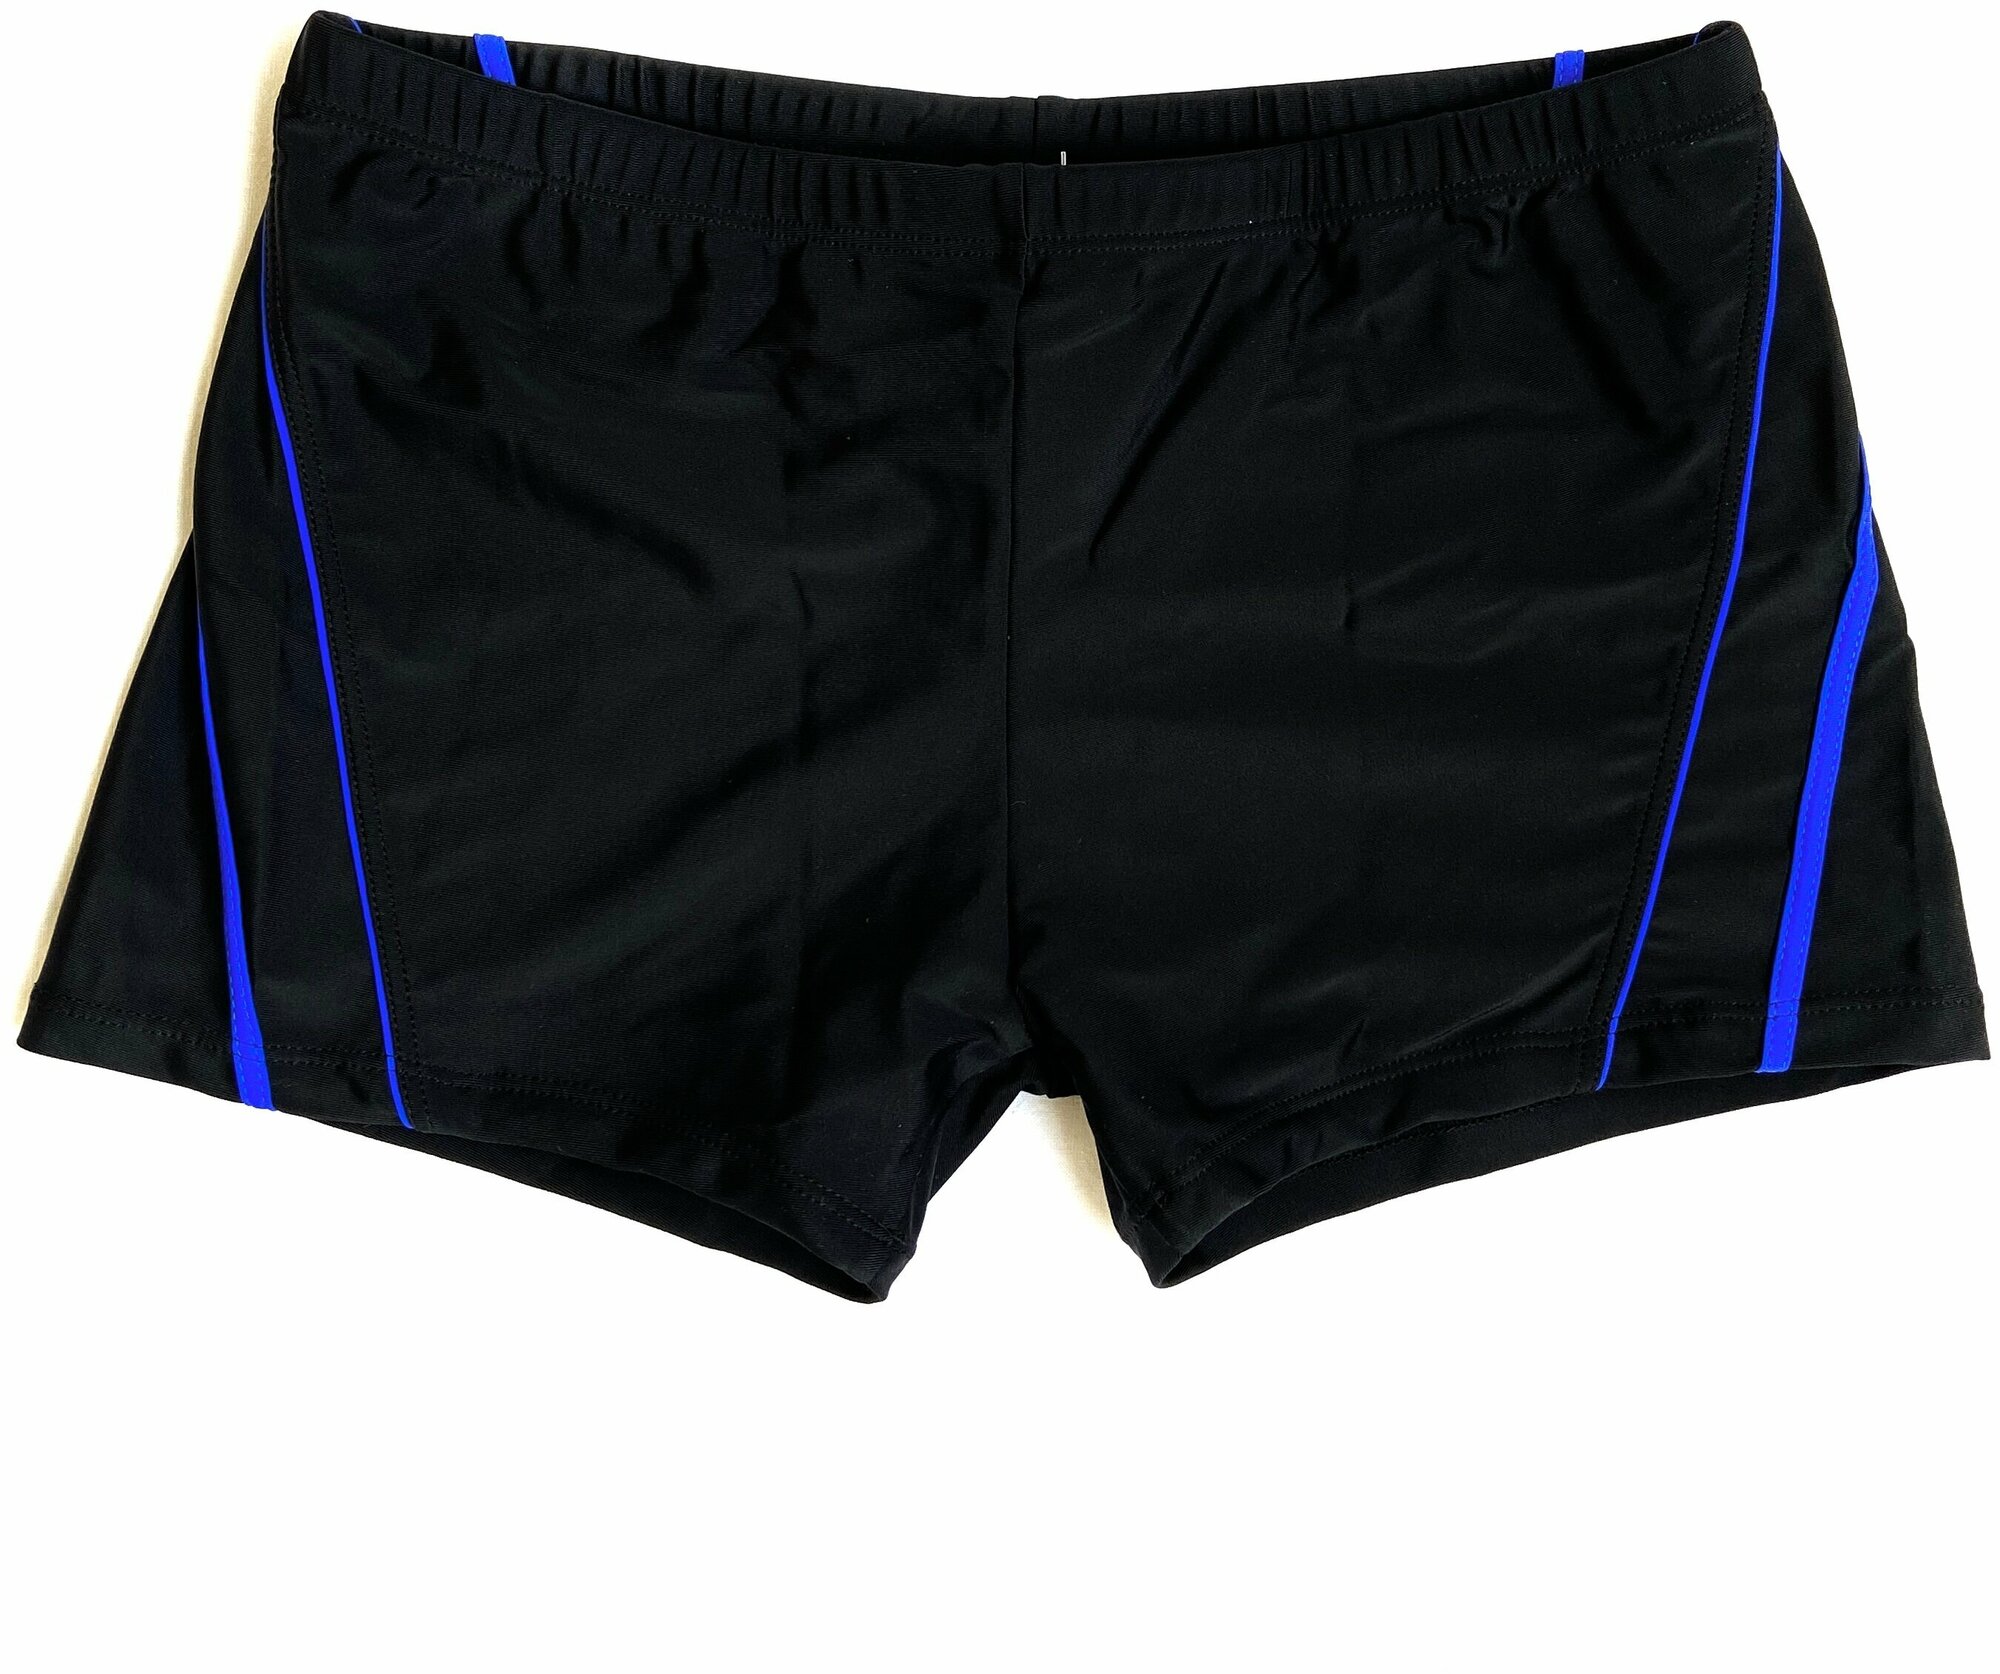 Плавки-шорты детские для плавания(Размер: 38-46 Цвет: черный/синий) / Трусы купальные подростковые шорты для бассейна тренировок занятия спортом